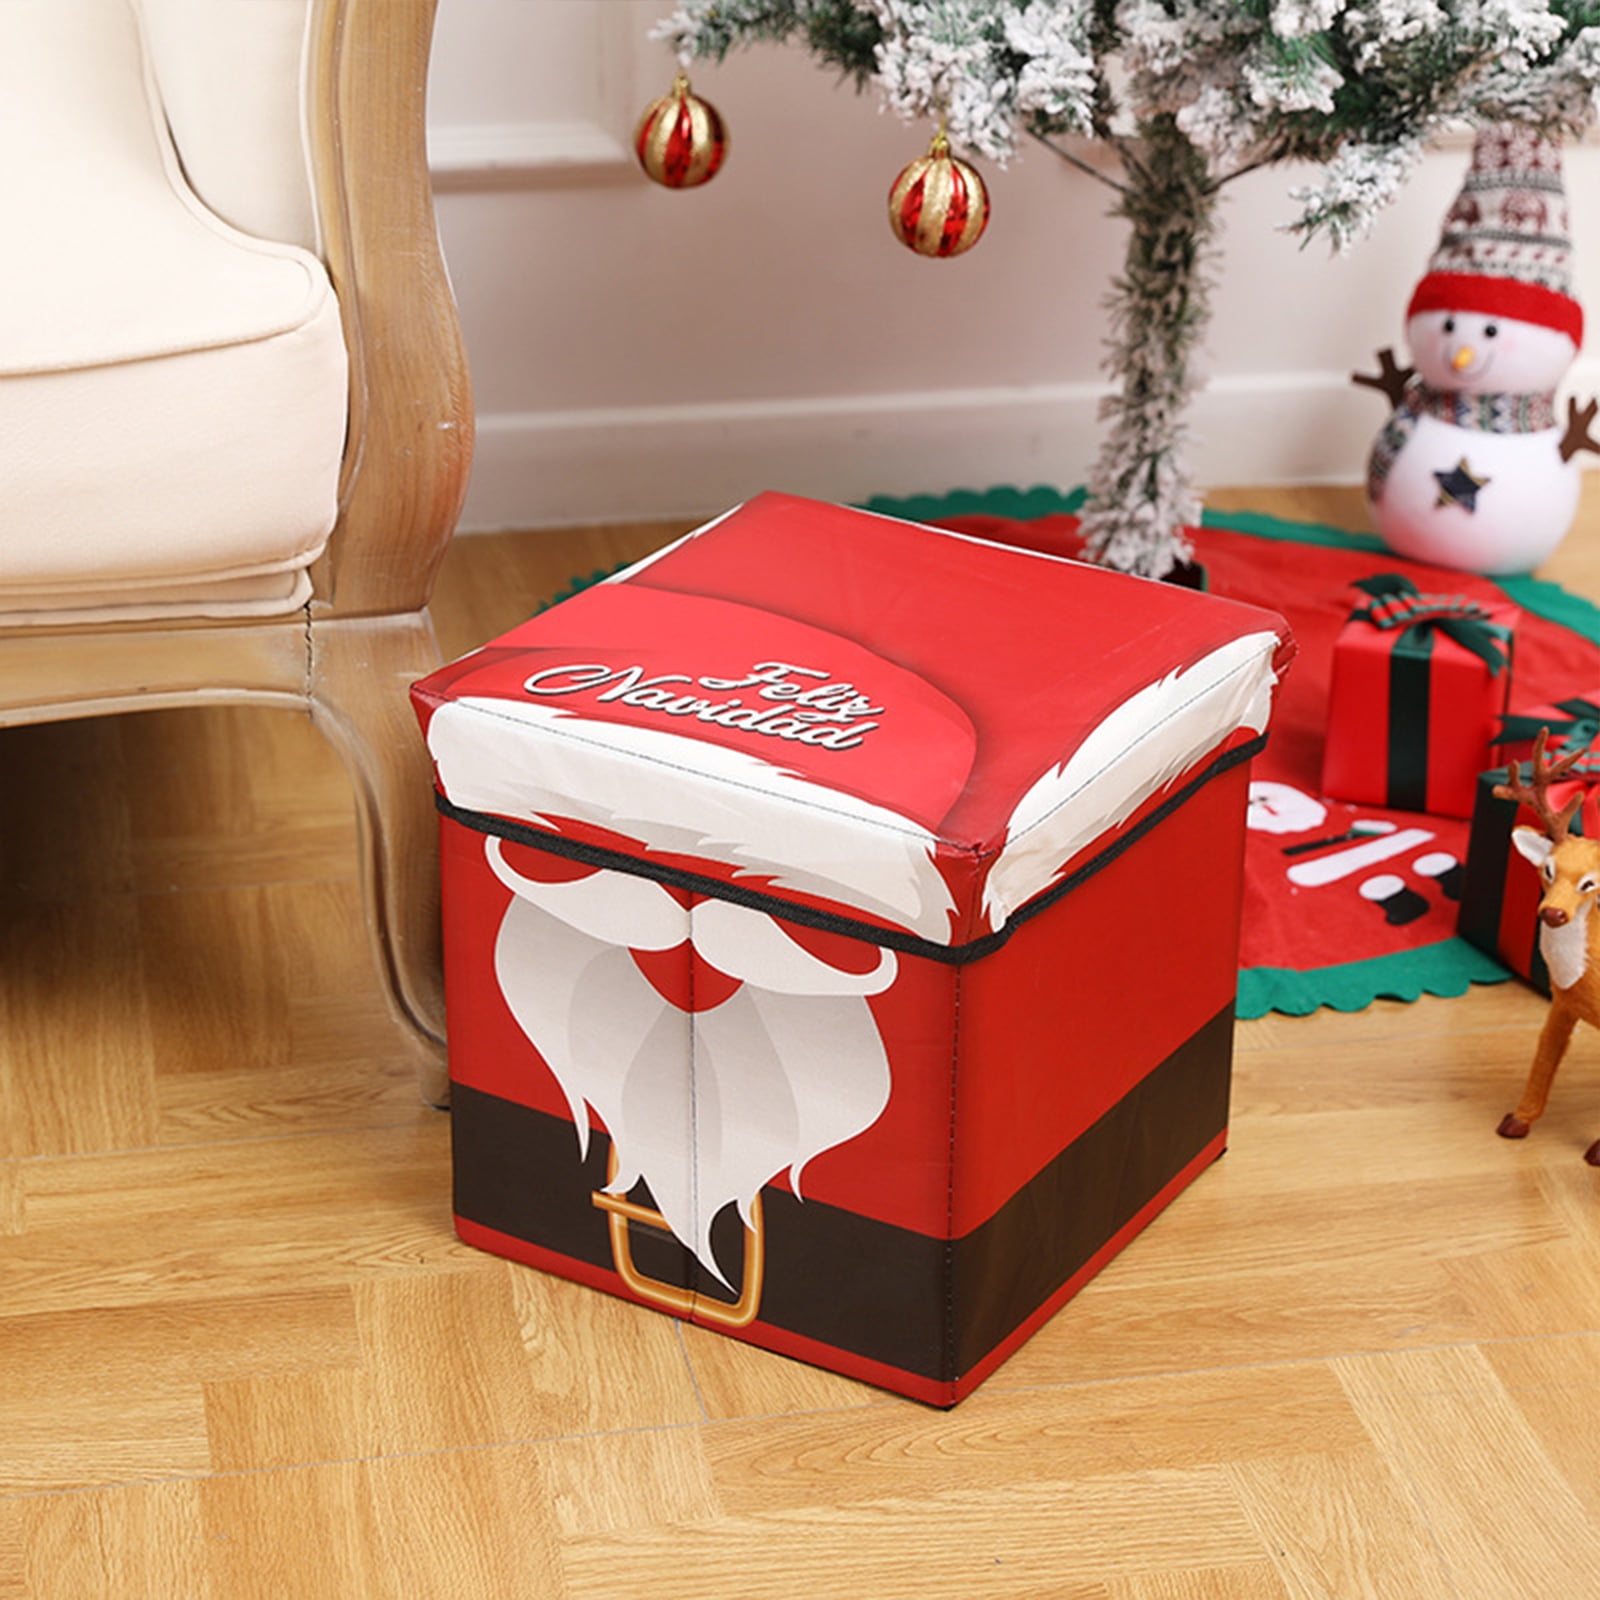 Storage Box//holiday Box//santa in Chimney//vhs// 5x7 Photo